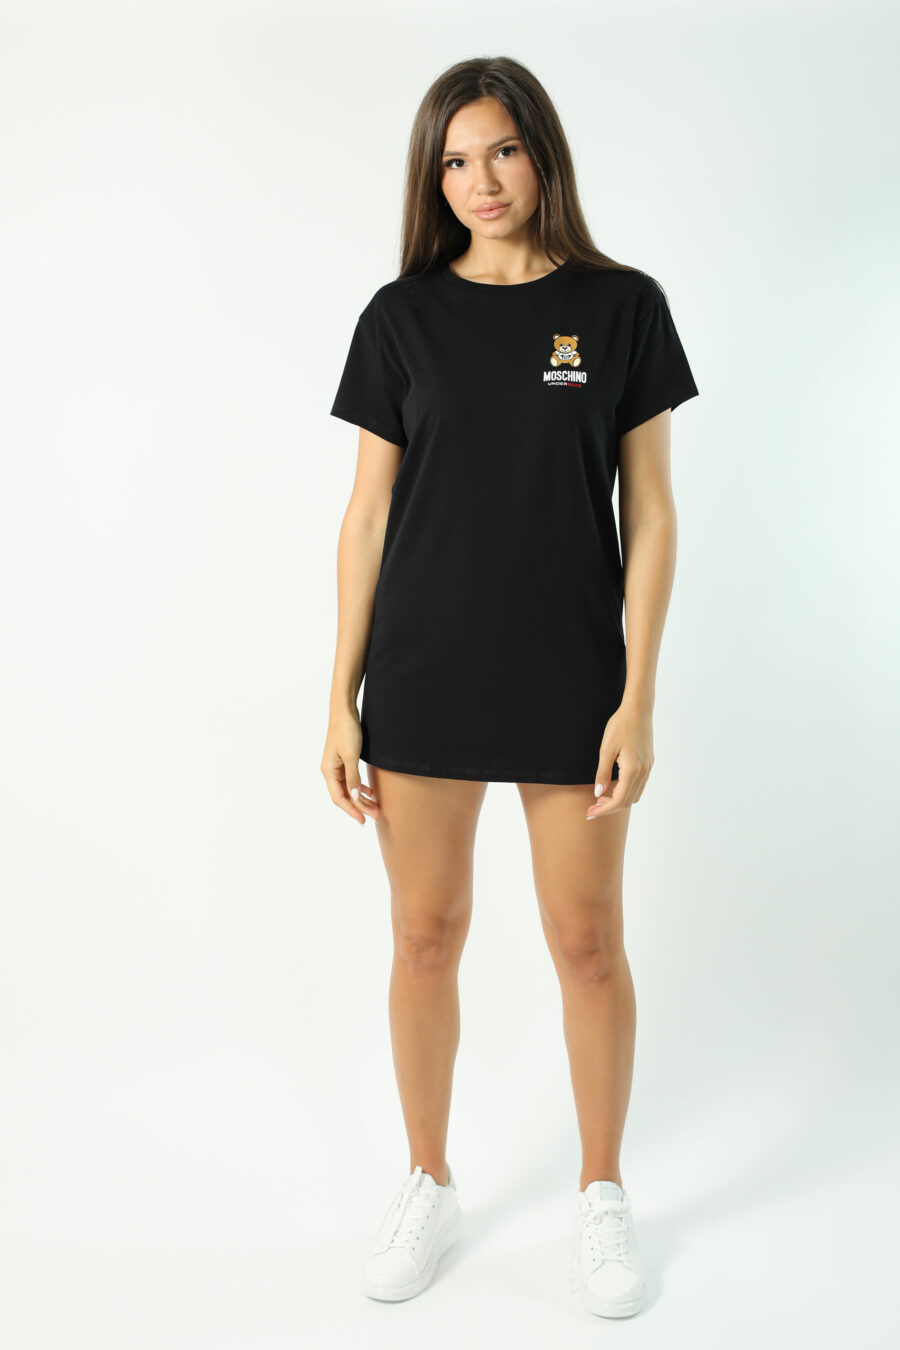 T-shirt maxi preta com mini logótipo de urso por baixo - Fotos 2802